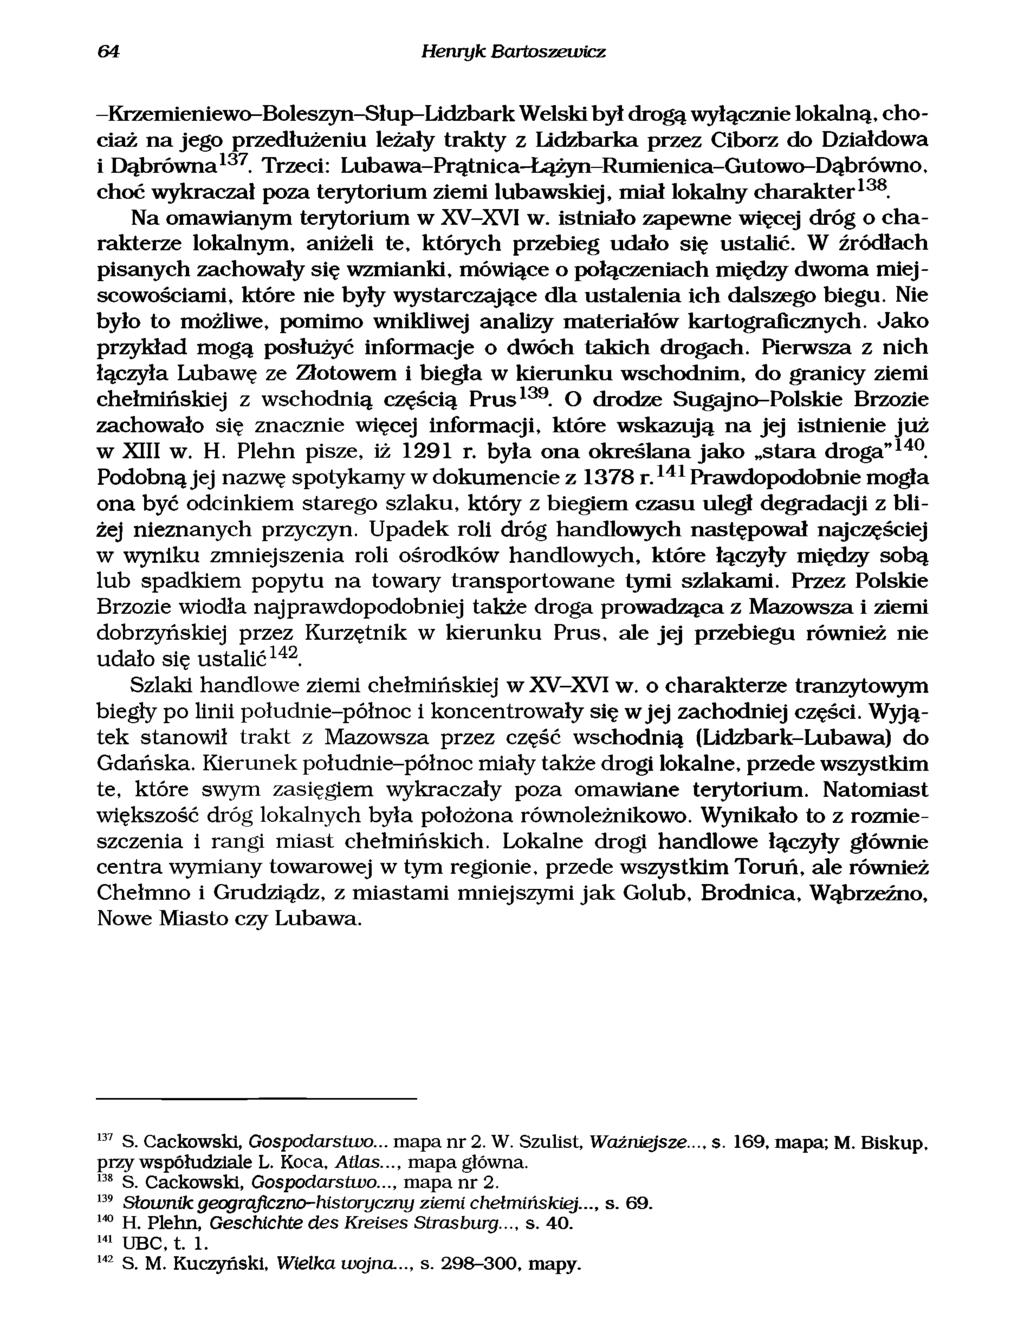 64 Henryk Bartoszewicz -Krzem leniewo-boleszyn-słup-lidzbark Welski był drogą wyłącznie lokalną, chociaż n a jego przedłużeniu leżały trakty z Lidzbarka przez Ciborz do Działdowa i D ąbrów n a137.